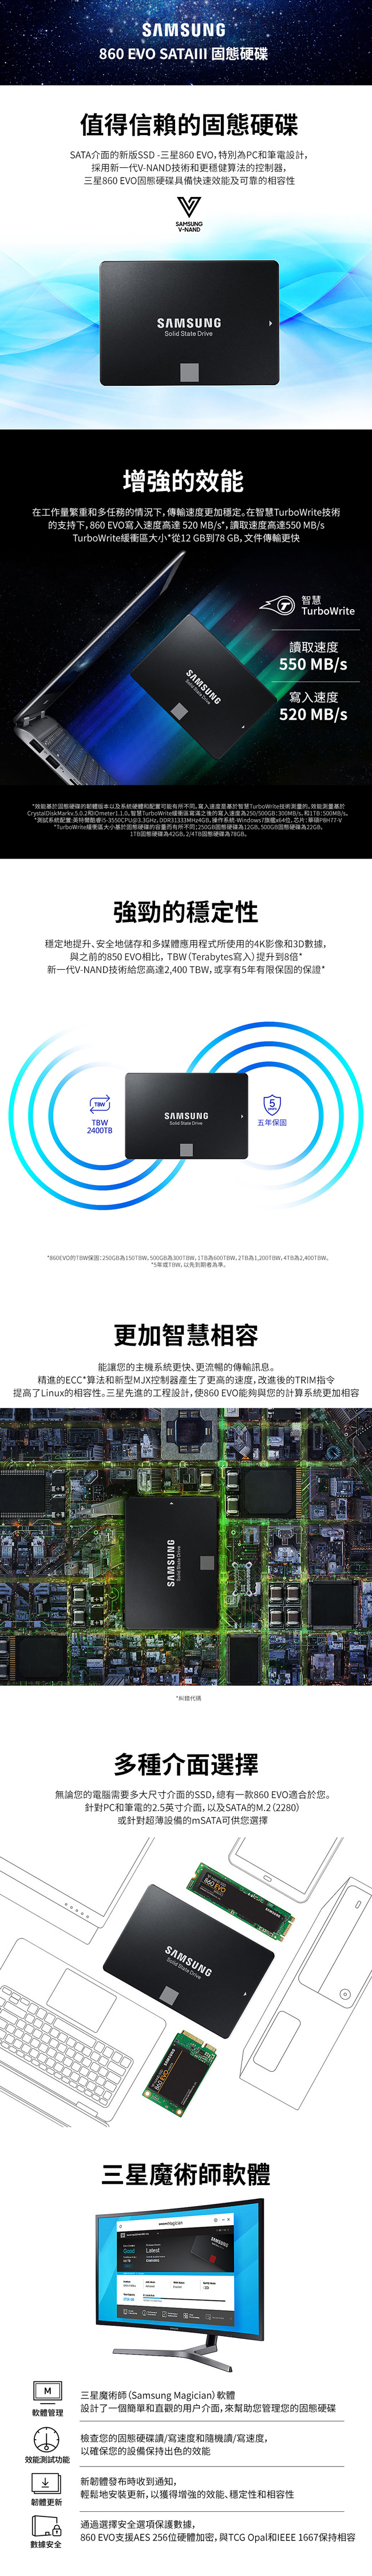 Samsung 860 EVO 2TB SSD固態硬碟